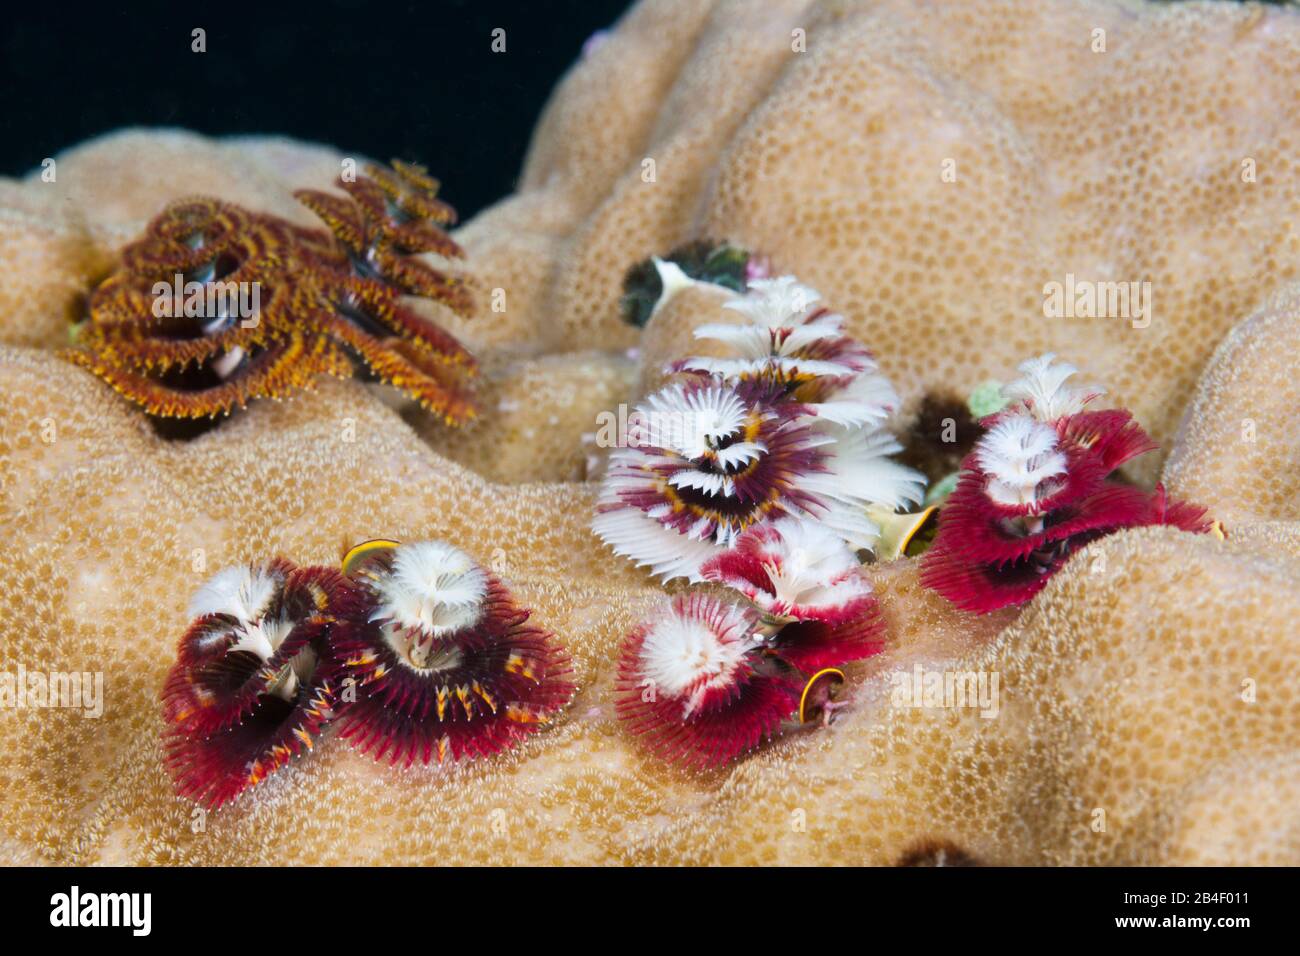 Colored Christmas-Tree-Worms, Spirobranchus giganteus, Tufi, Solomon Sea, Papua New Guinea Stock Photo